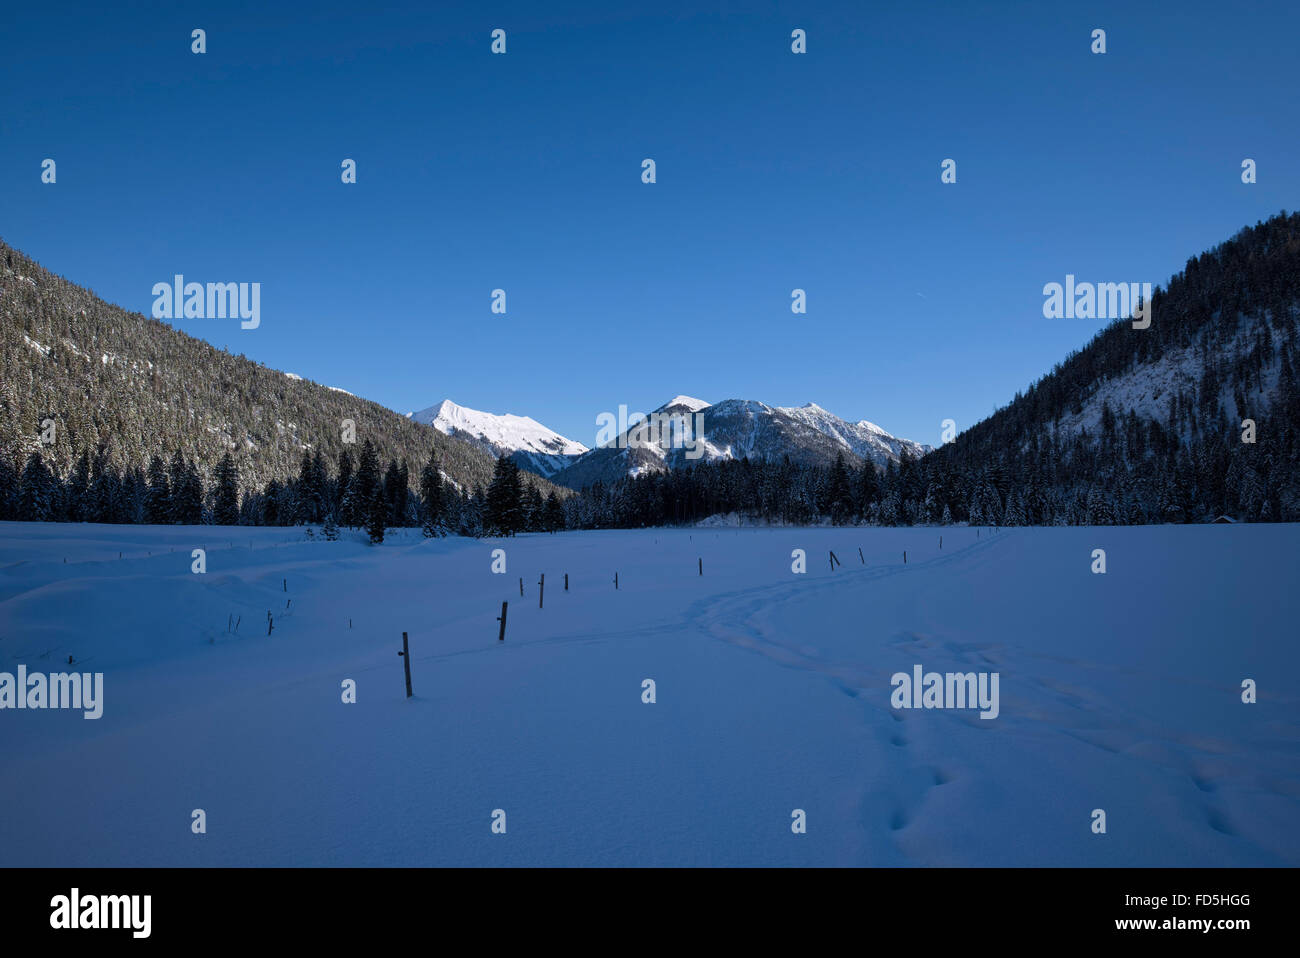 Les pistes de ski et de raquette à travers un paysage de montagne enneigé, Karwendel, Hinterriss, Autriche Banque D'Images